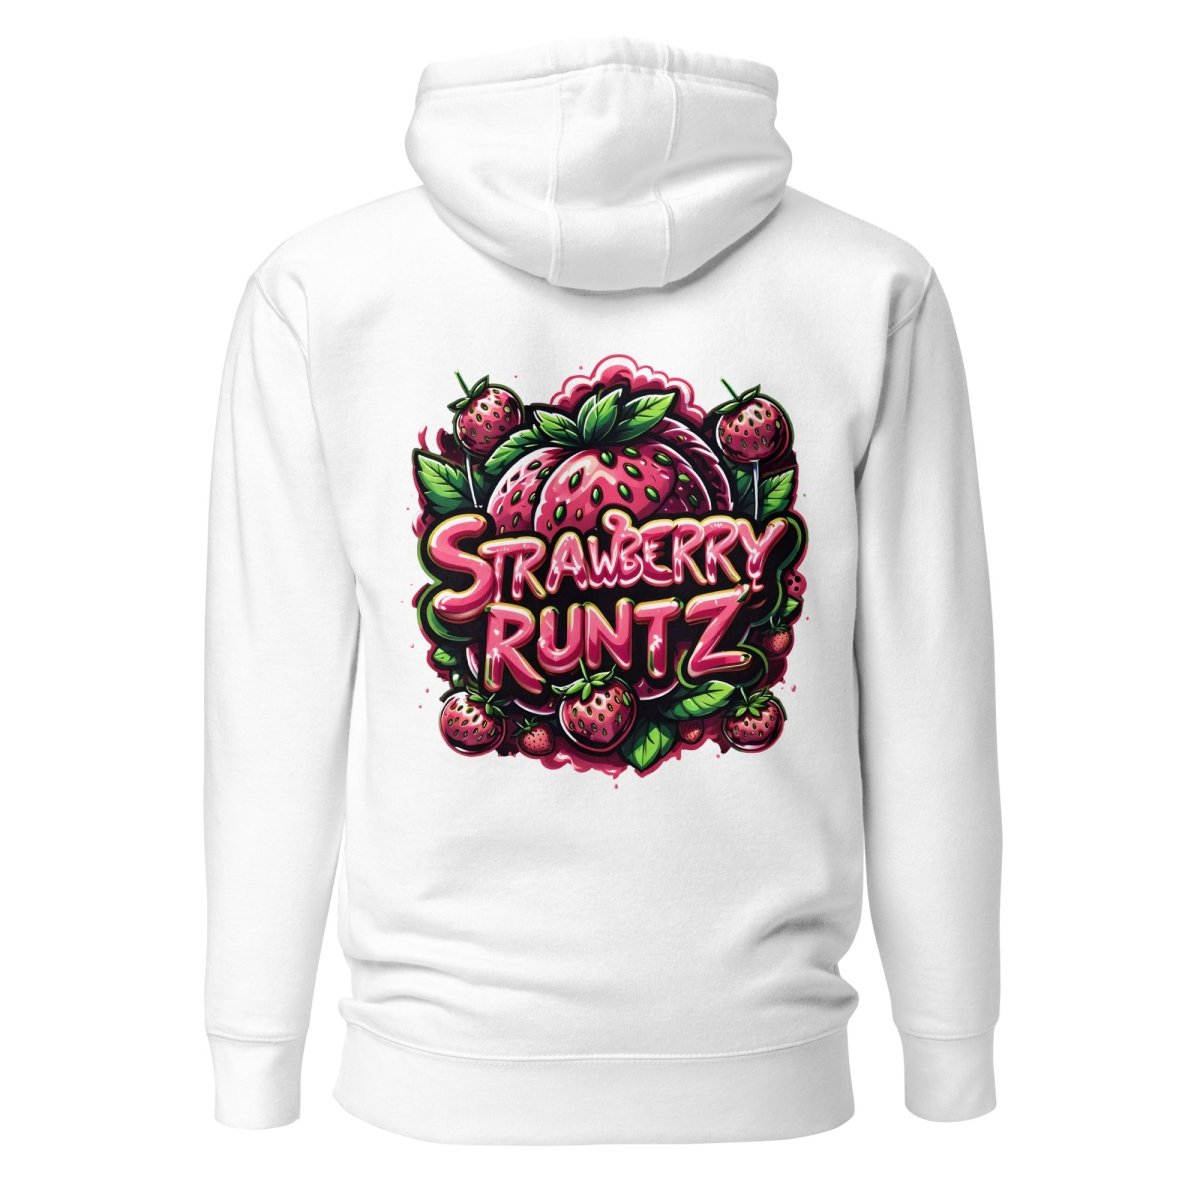 Strawberry Runtz Hoodie - Mainly High